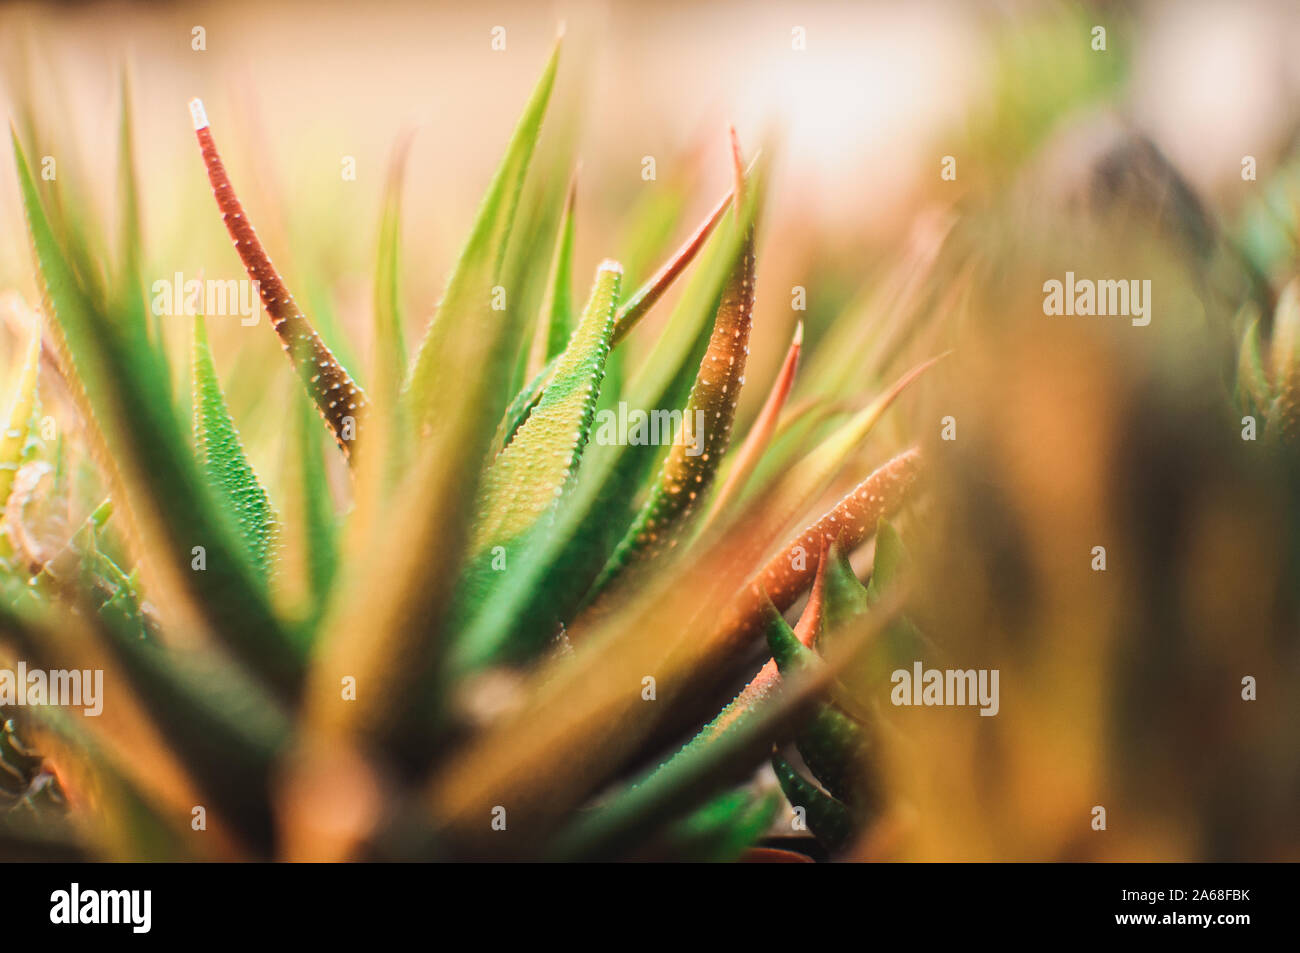 Sukkulenten, echeveria Kalanchoe saftige Zimmerpflanzen. Aloe ostifolia ist saftig krautige Pflanze, Arten der Aloe Gattung der Asphodelaceae Stockfoto